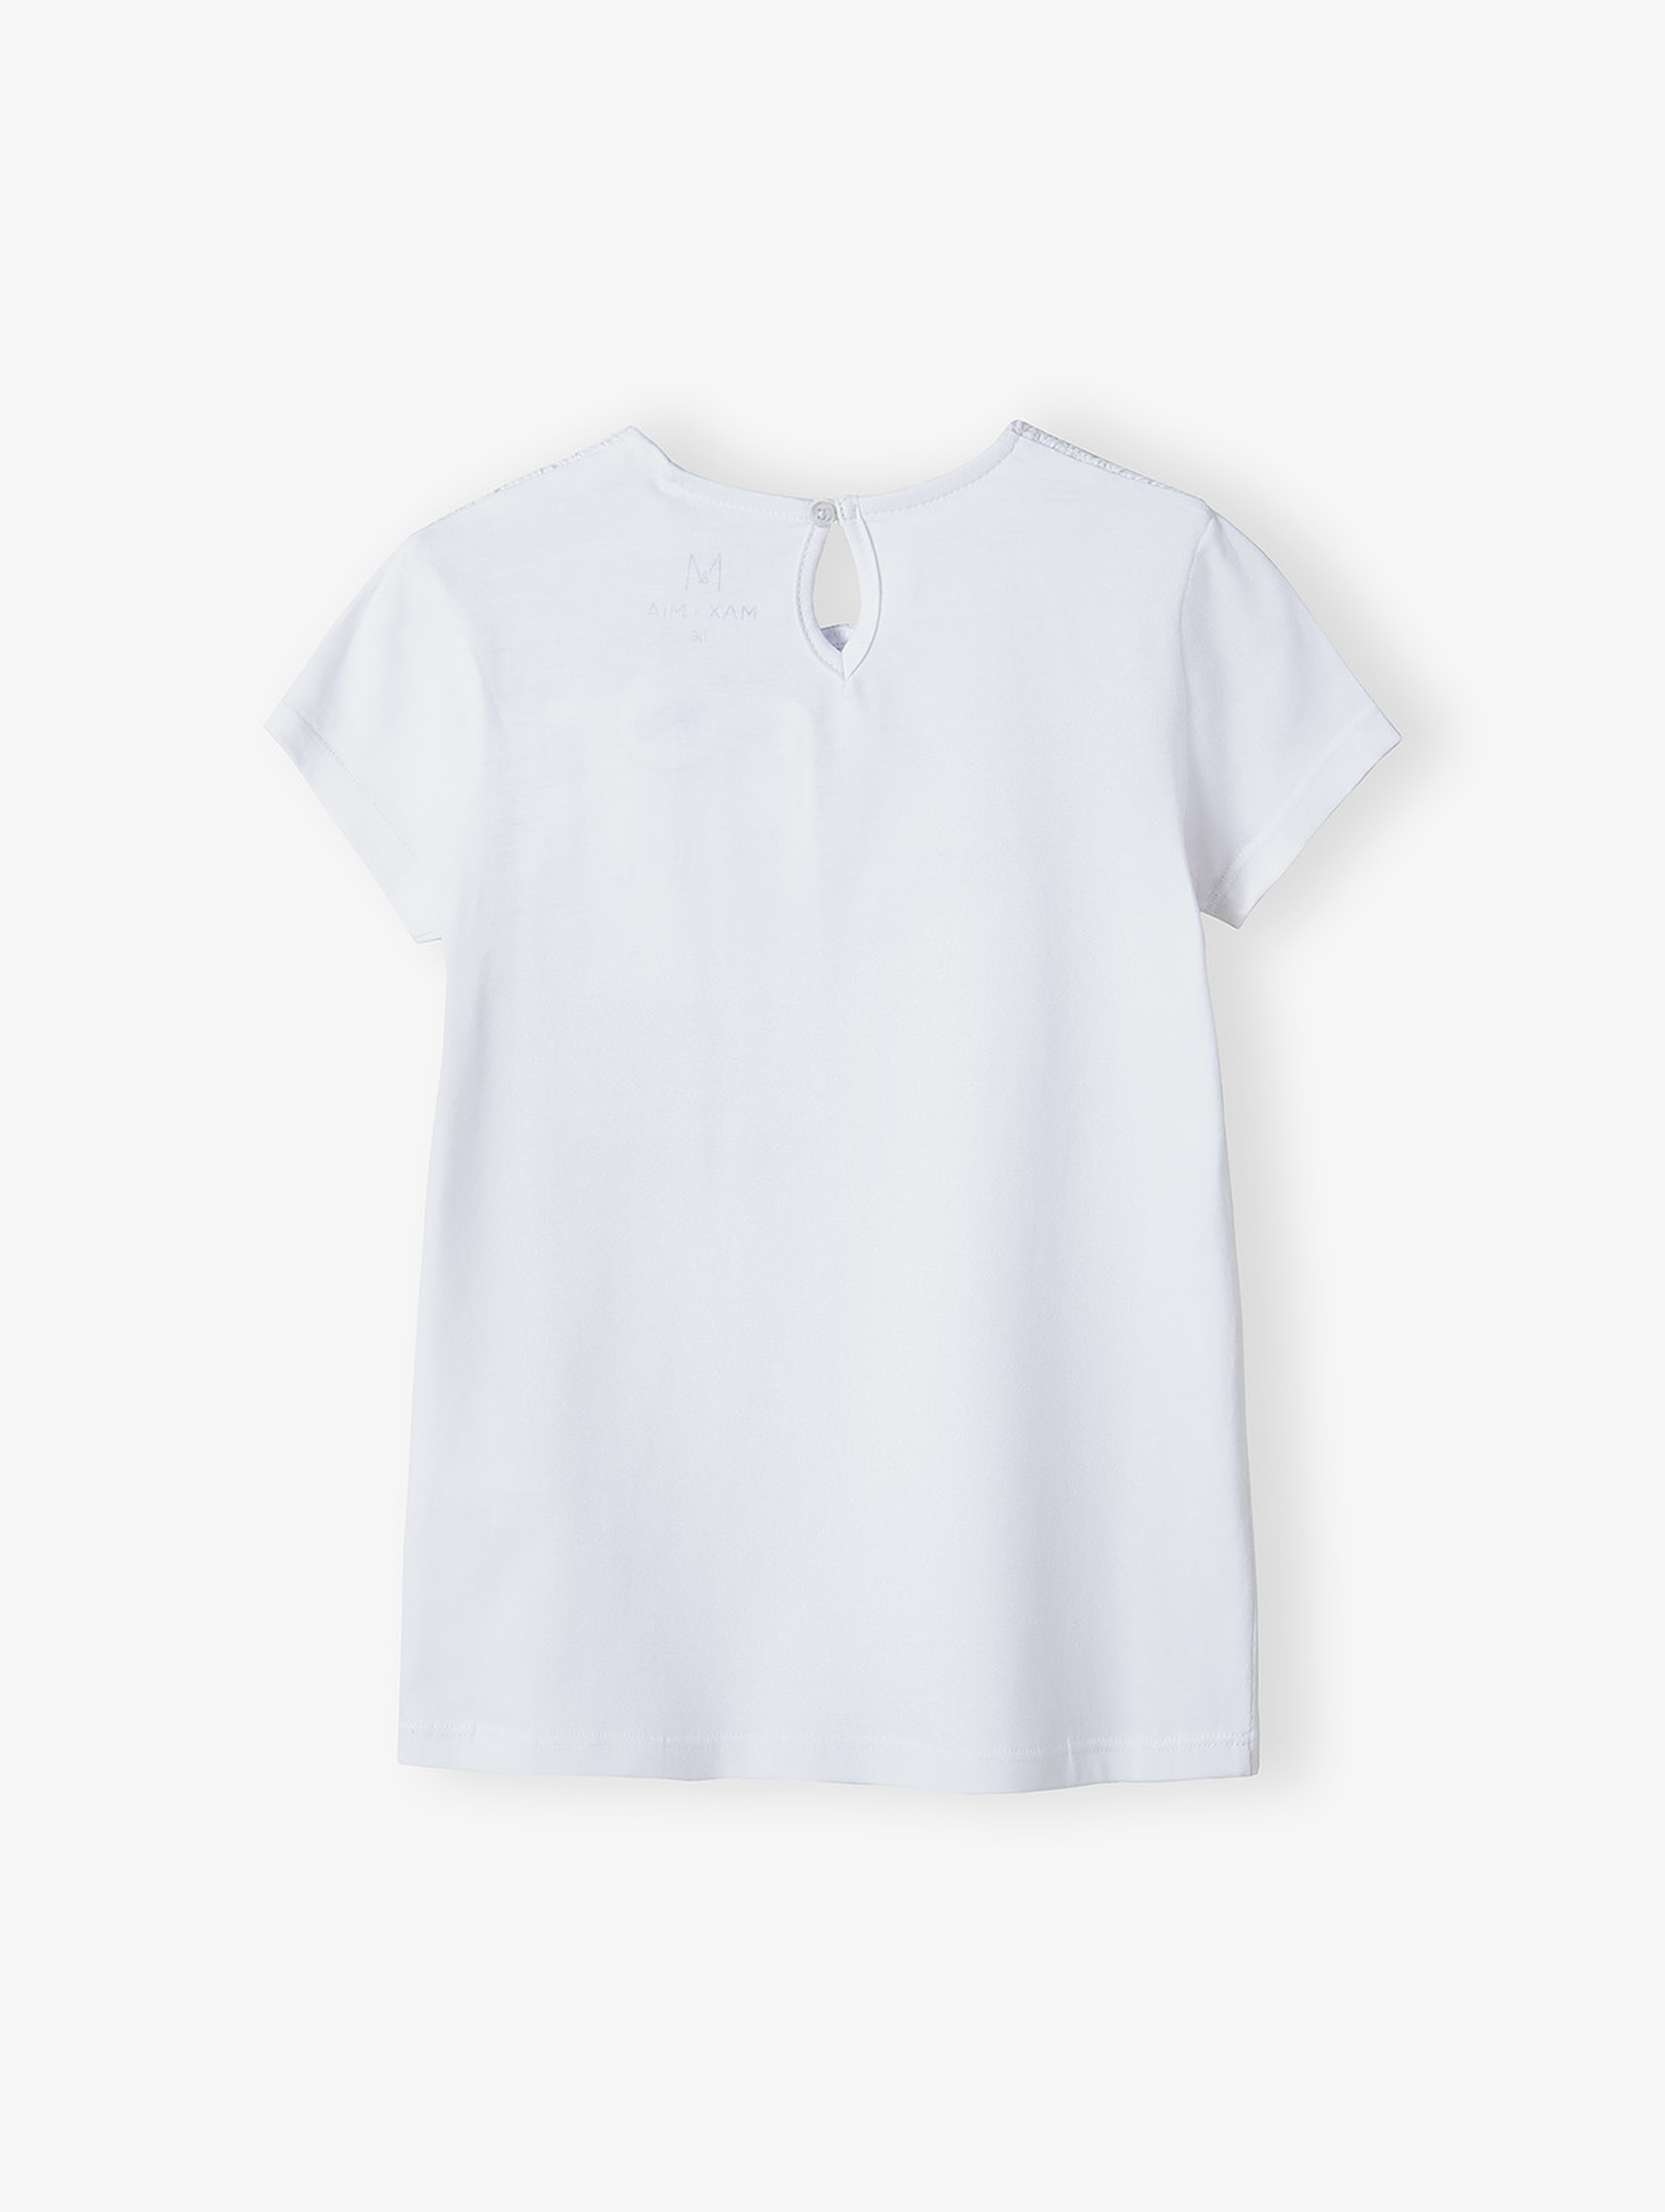 Elegancki biały t-shirt dla dziewczynki